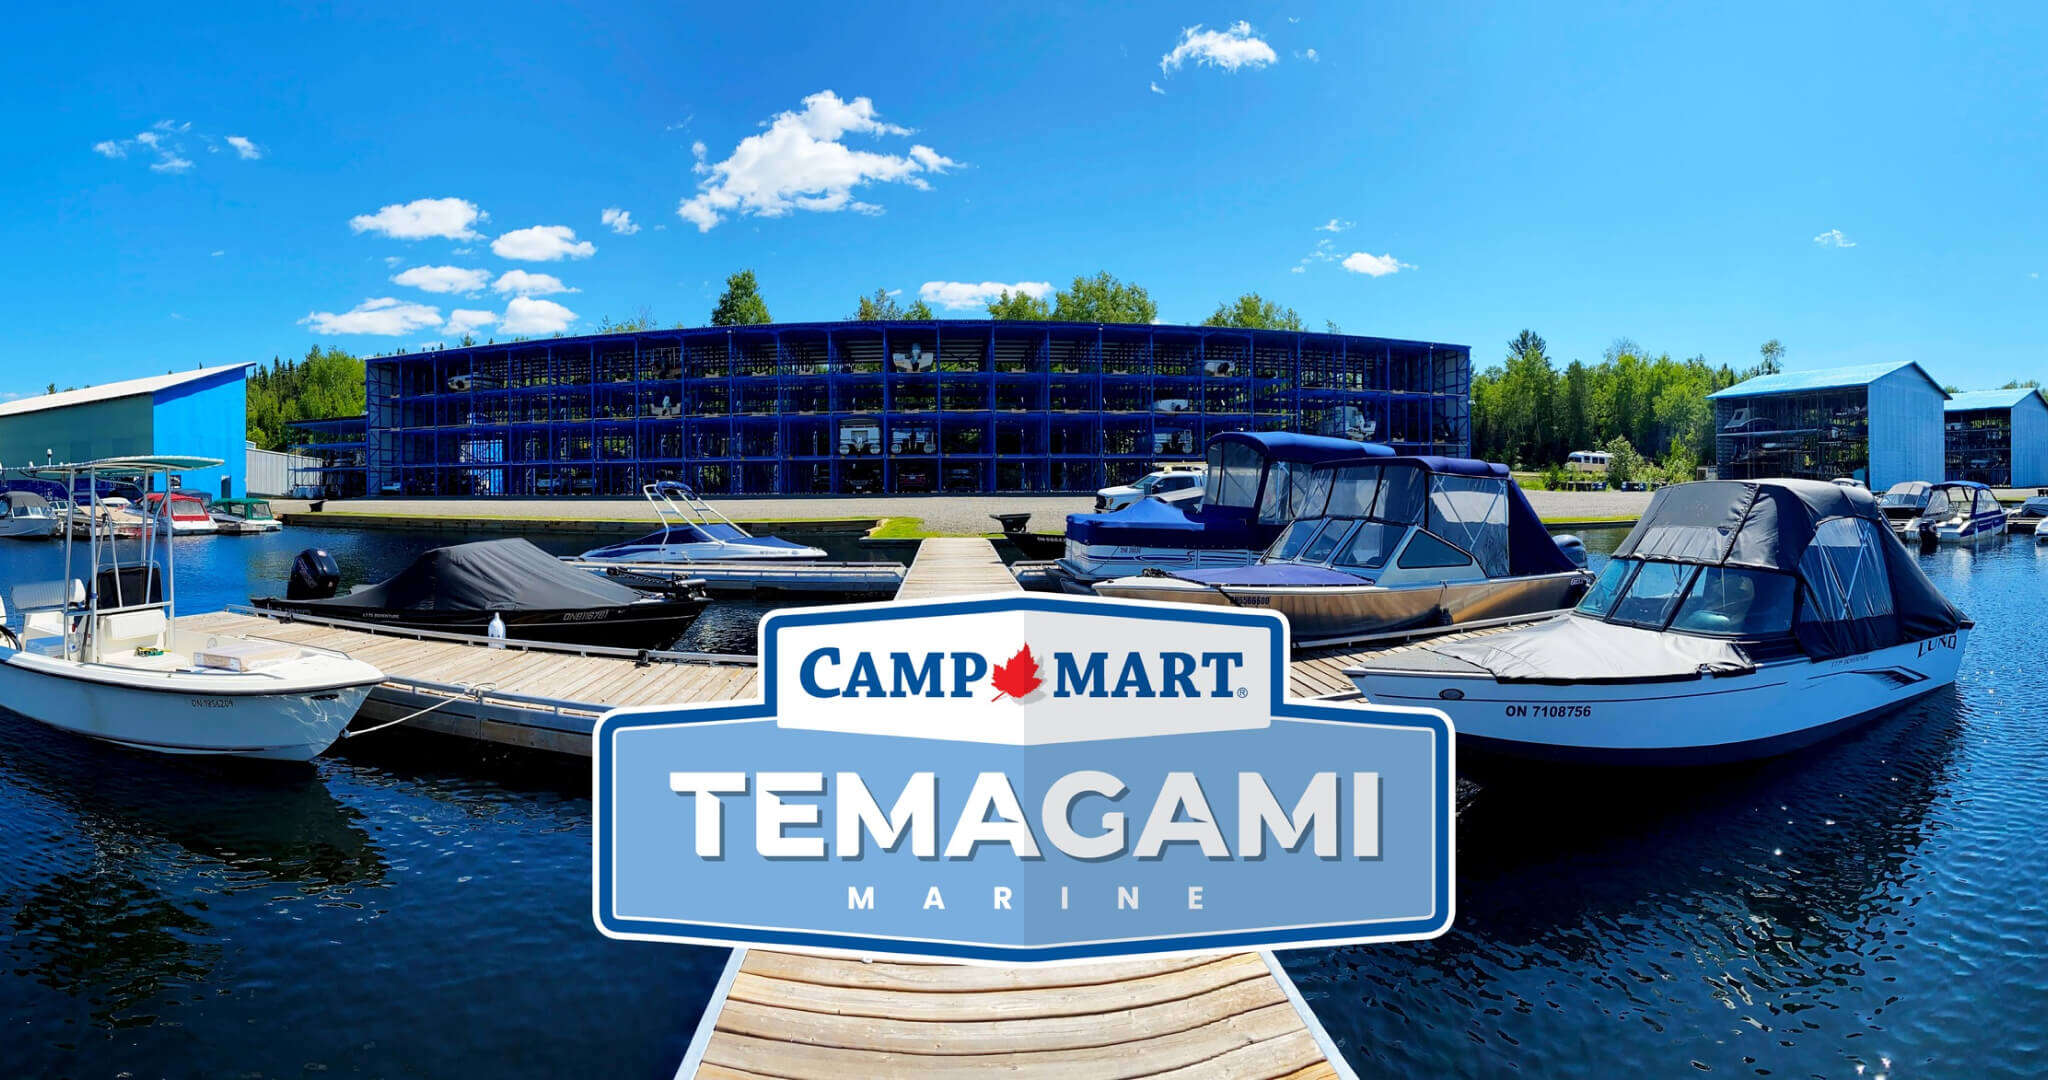 Bienvenue chez Temagami Marine.